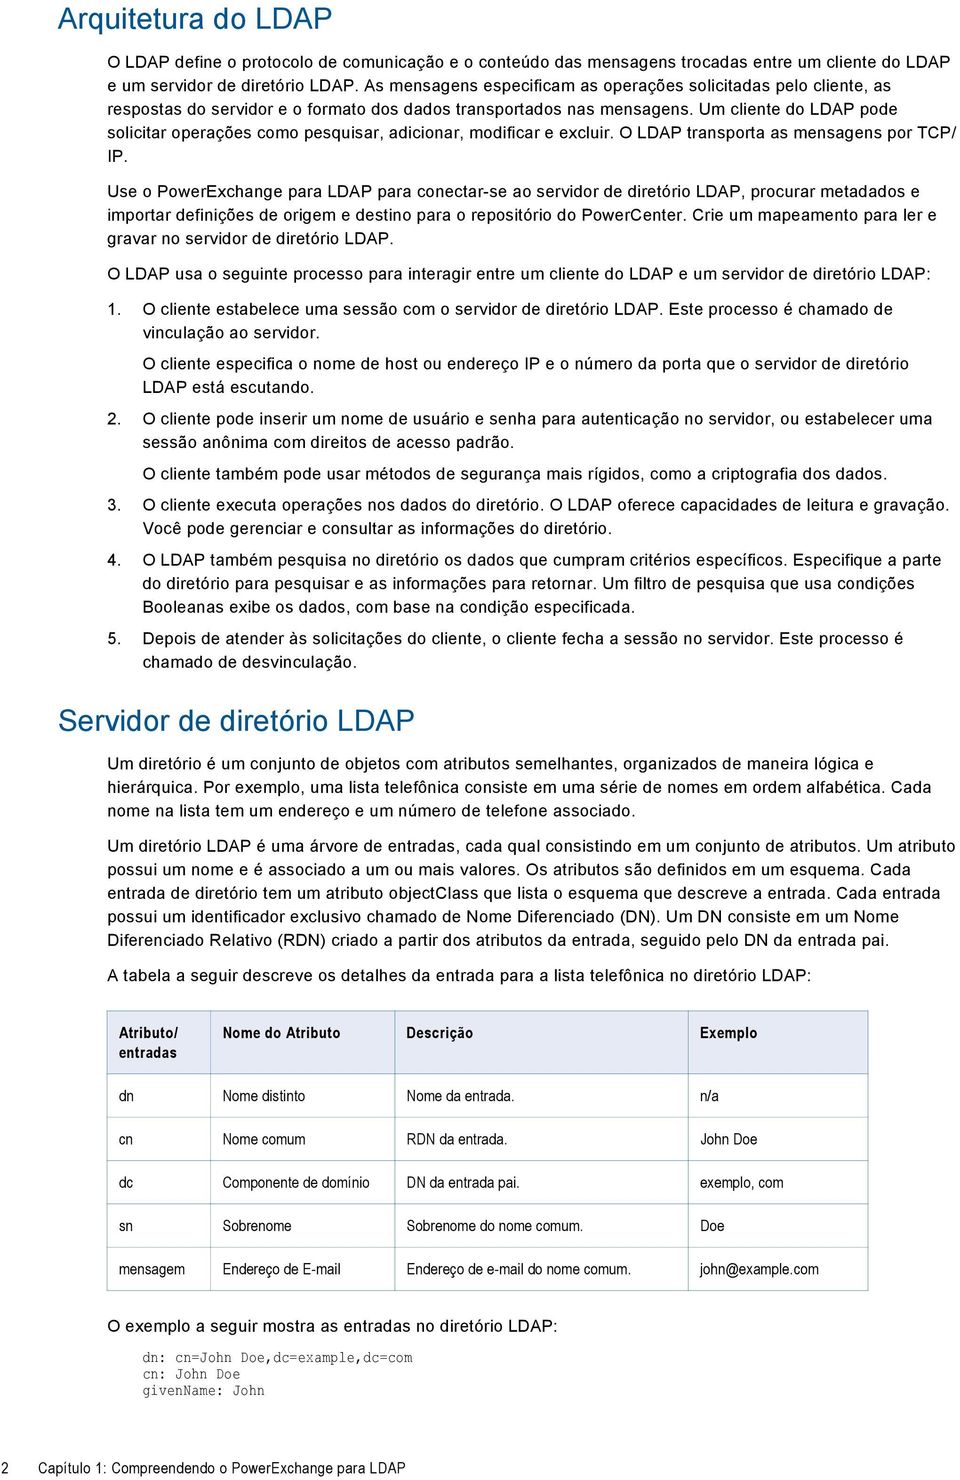 Um cliente do LDAP pode solicitar operações como pesquisar, adicionar, modificar e excluir. O LDAP transporta as mensagens por TCP/ IP.